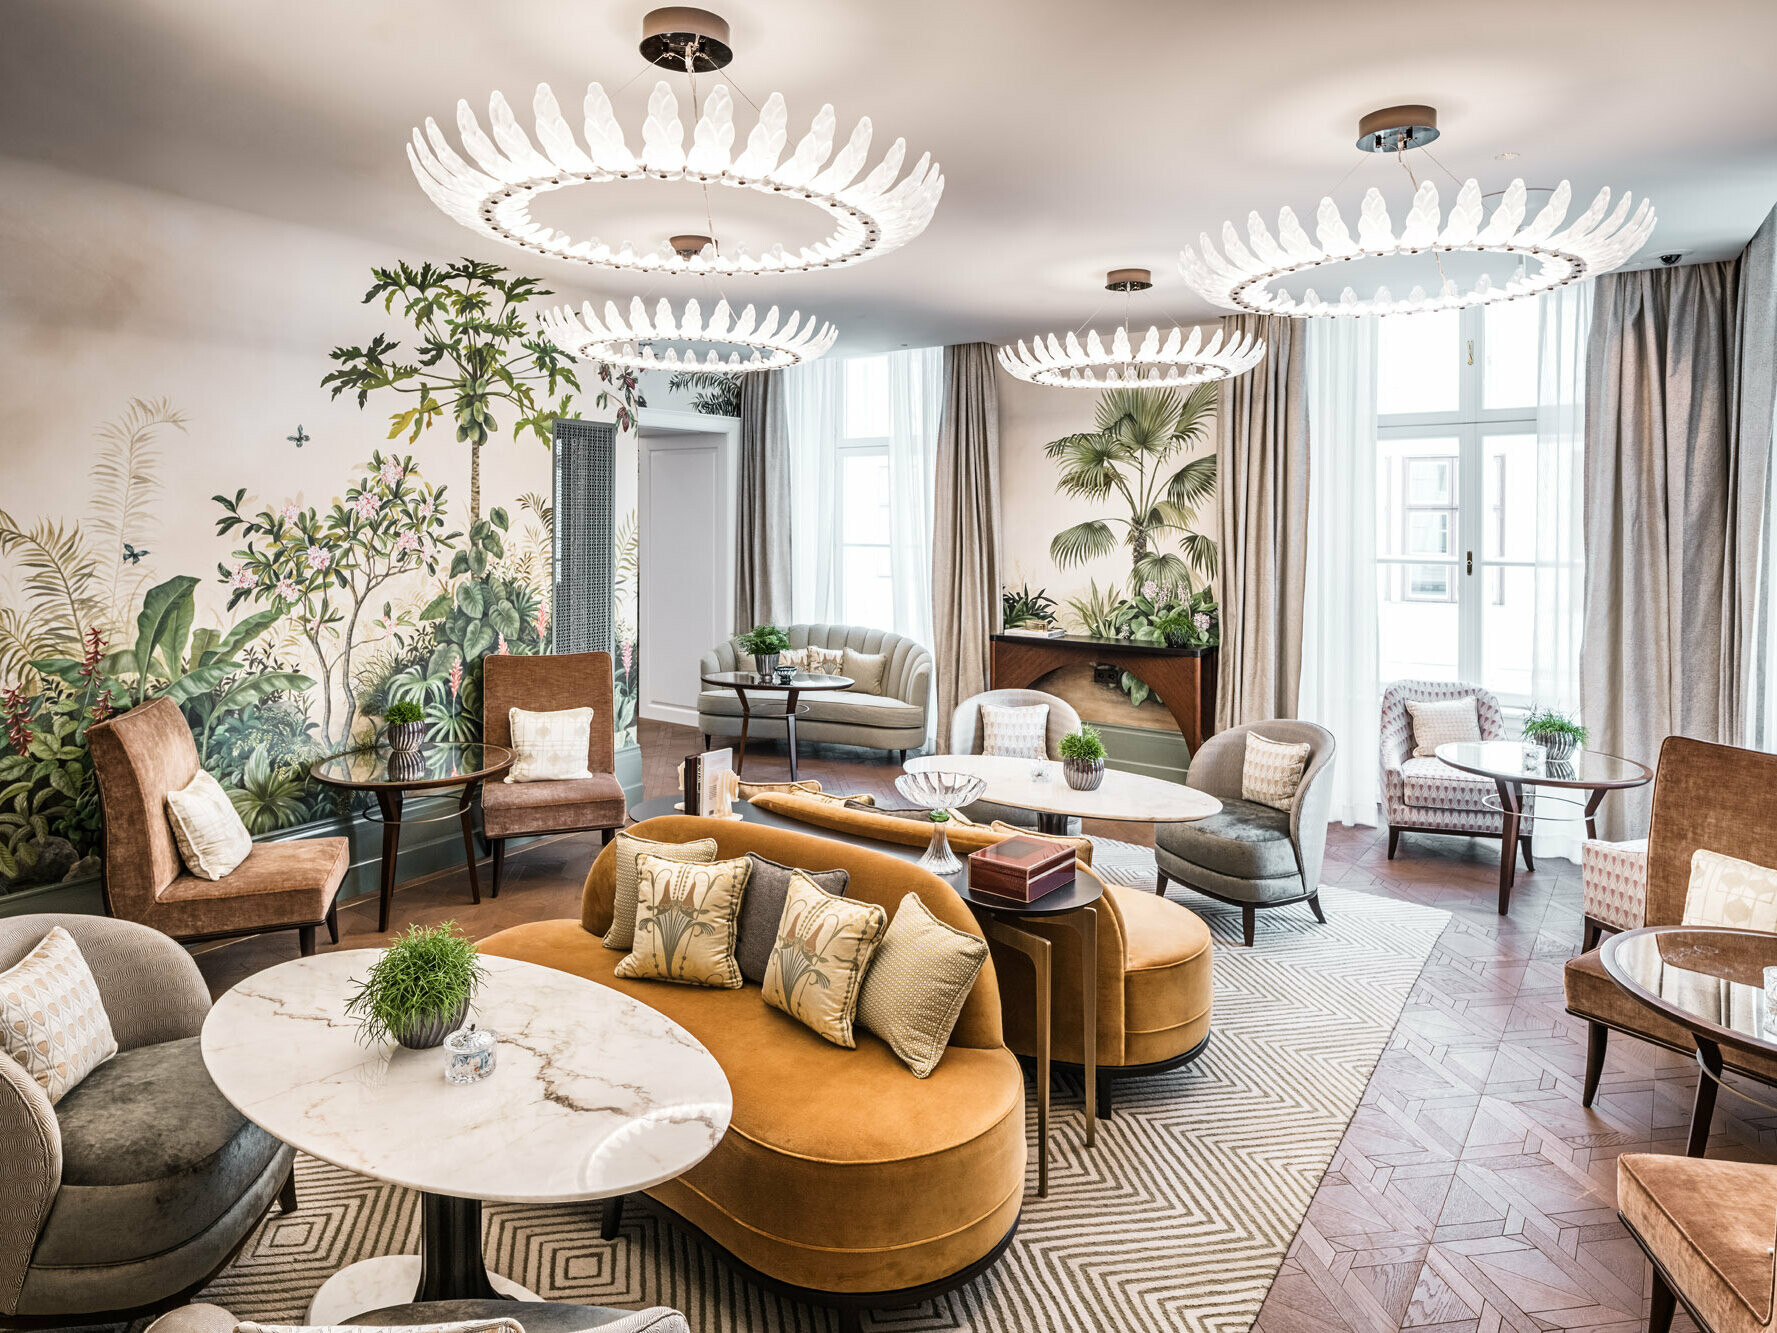 Intérieur de l’hôtel de luxe : un aménagement raffiné avec des meubles de qualité et des papiers peints aux motifs floraux.